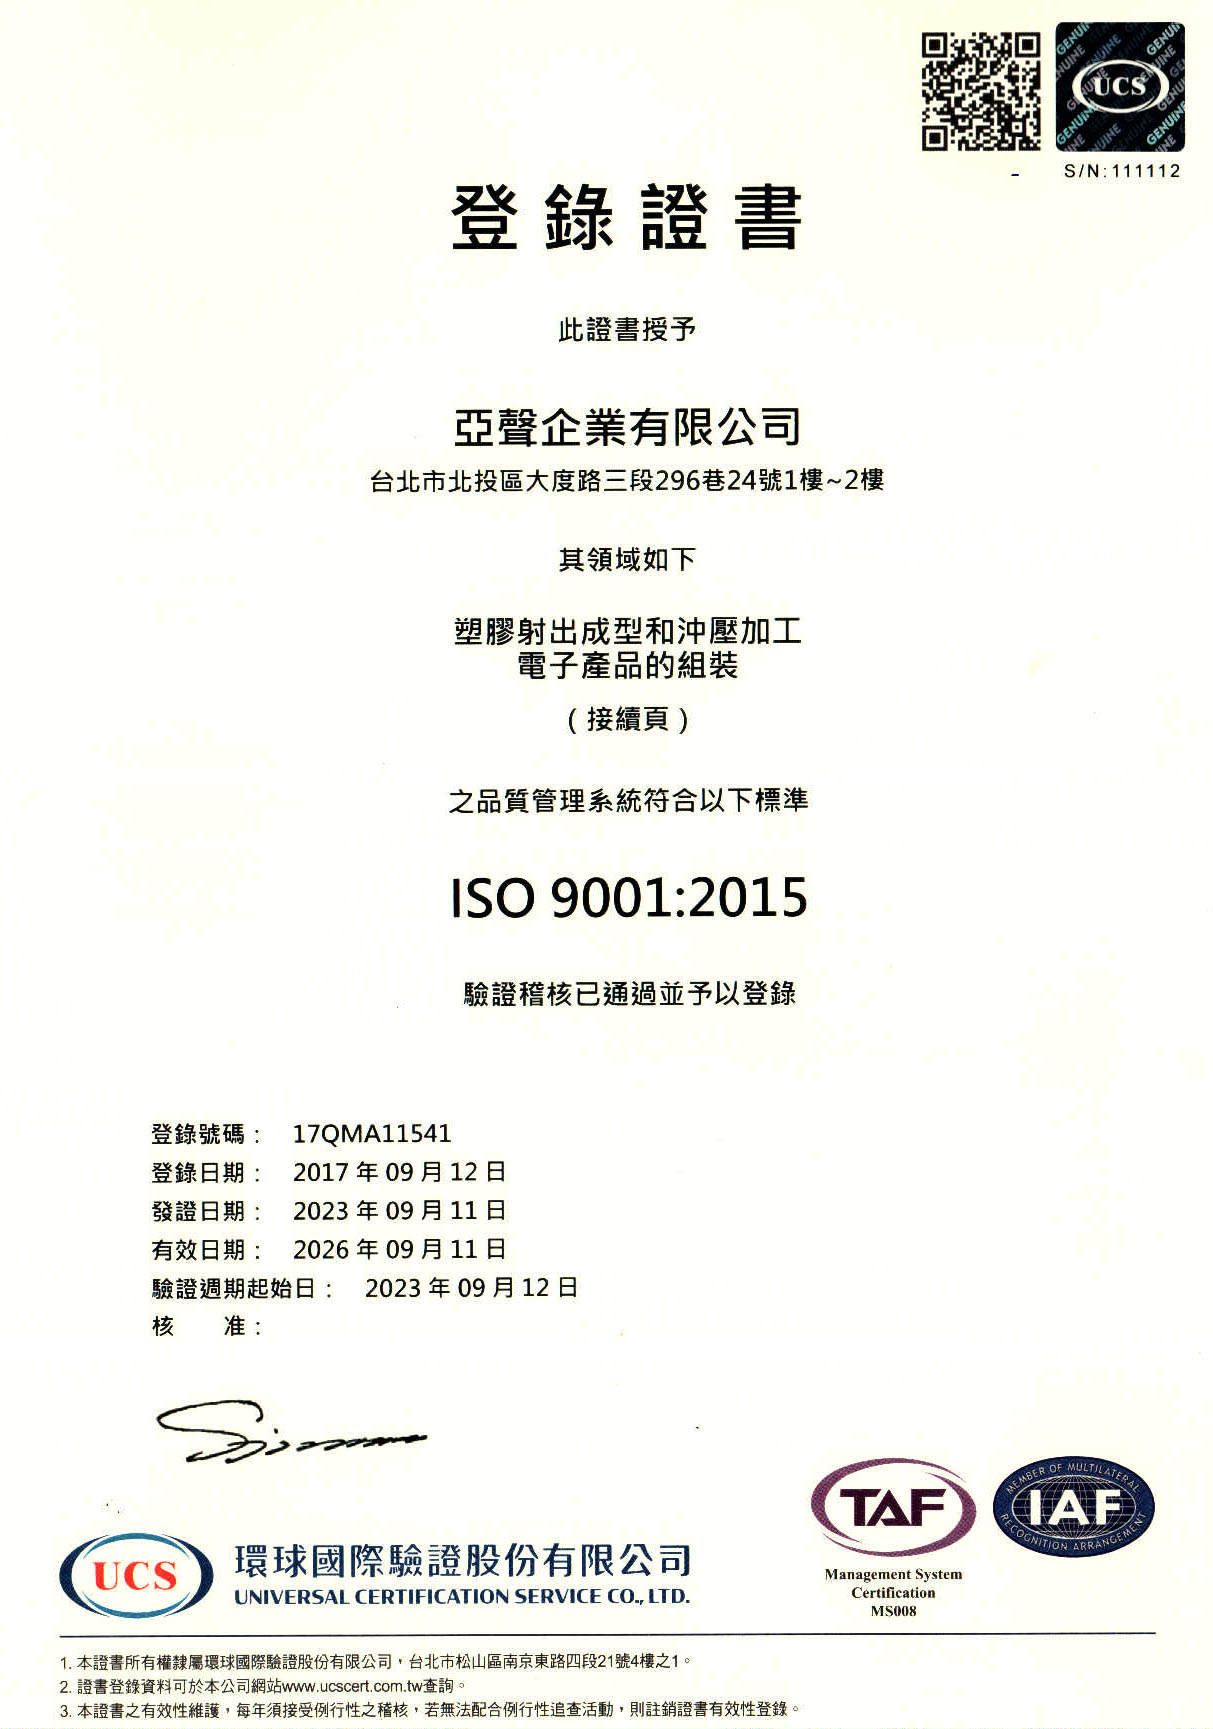 亚声ISO 9001 中文证书首页